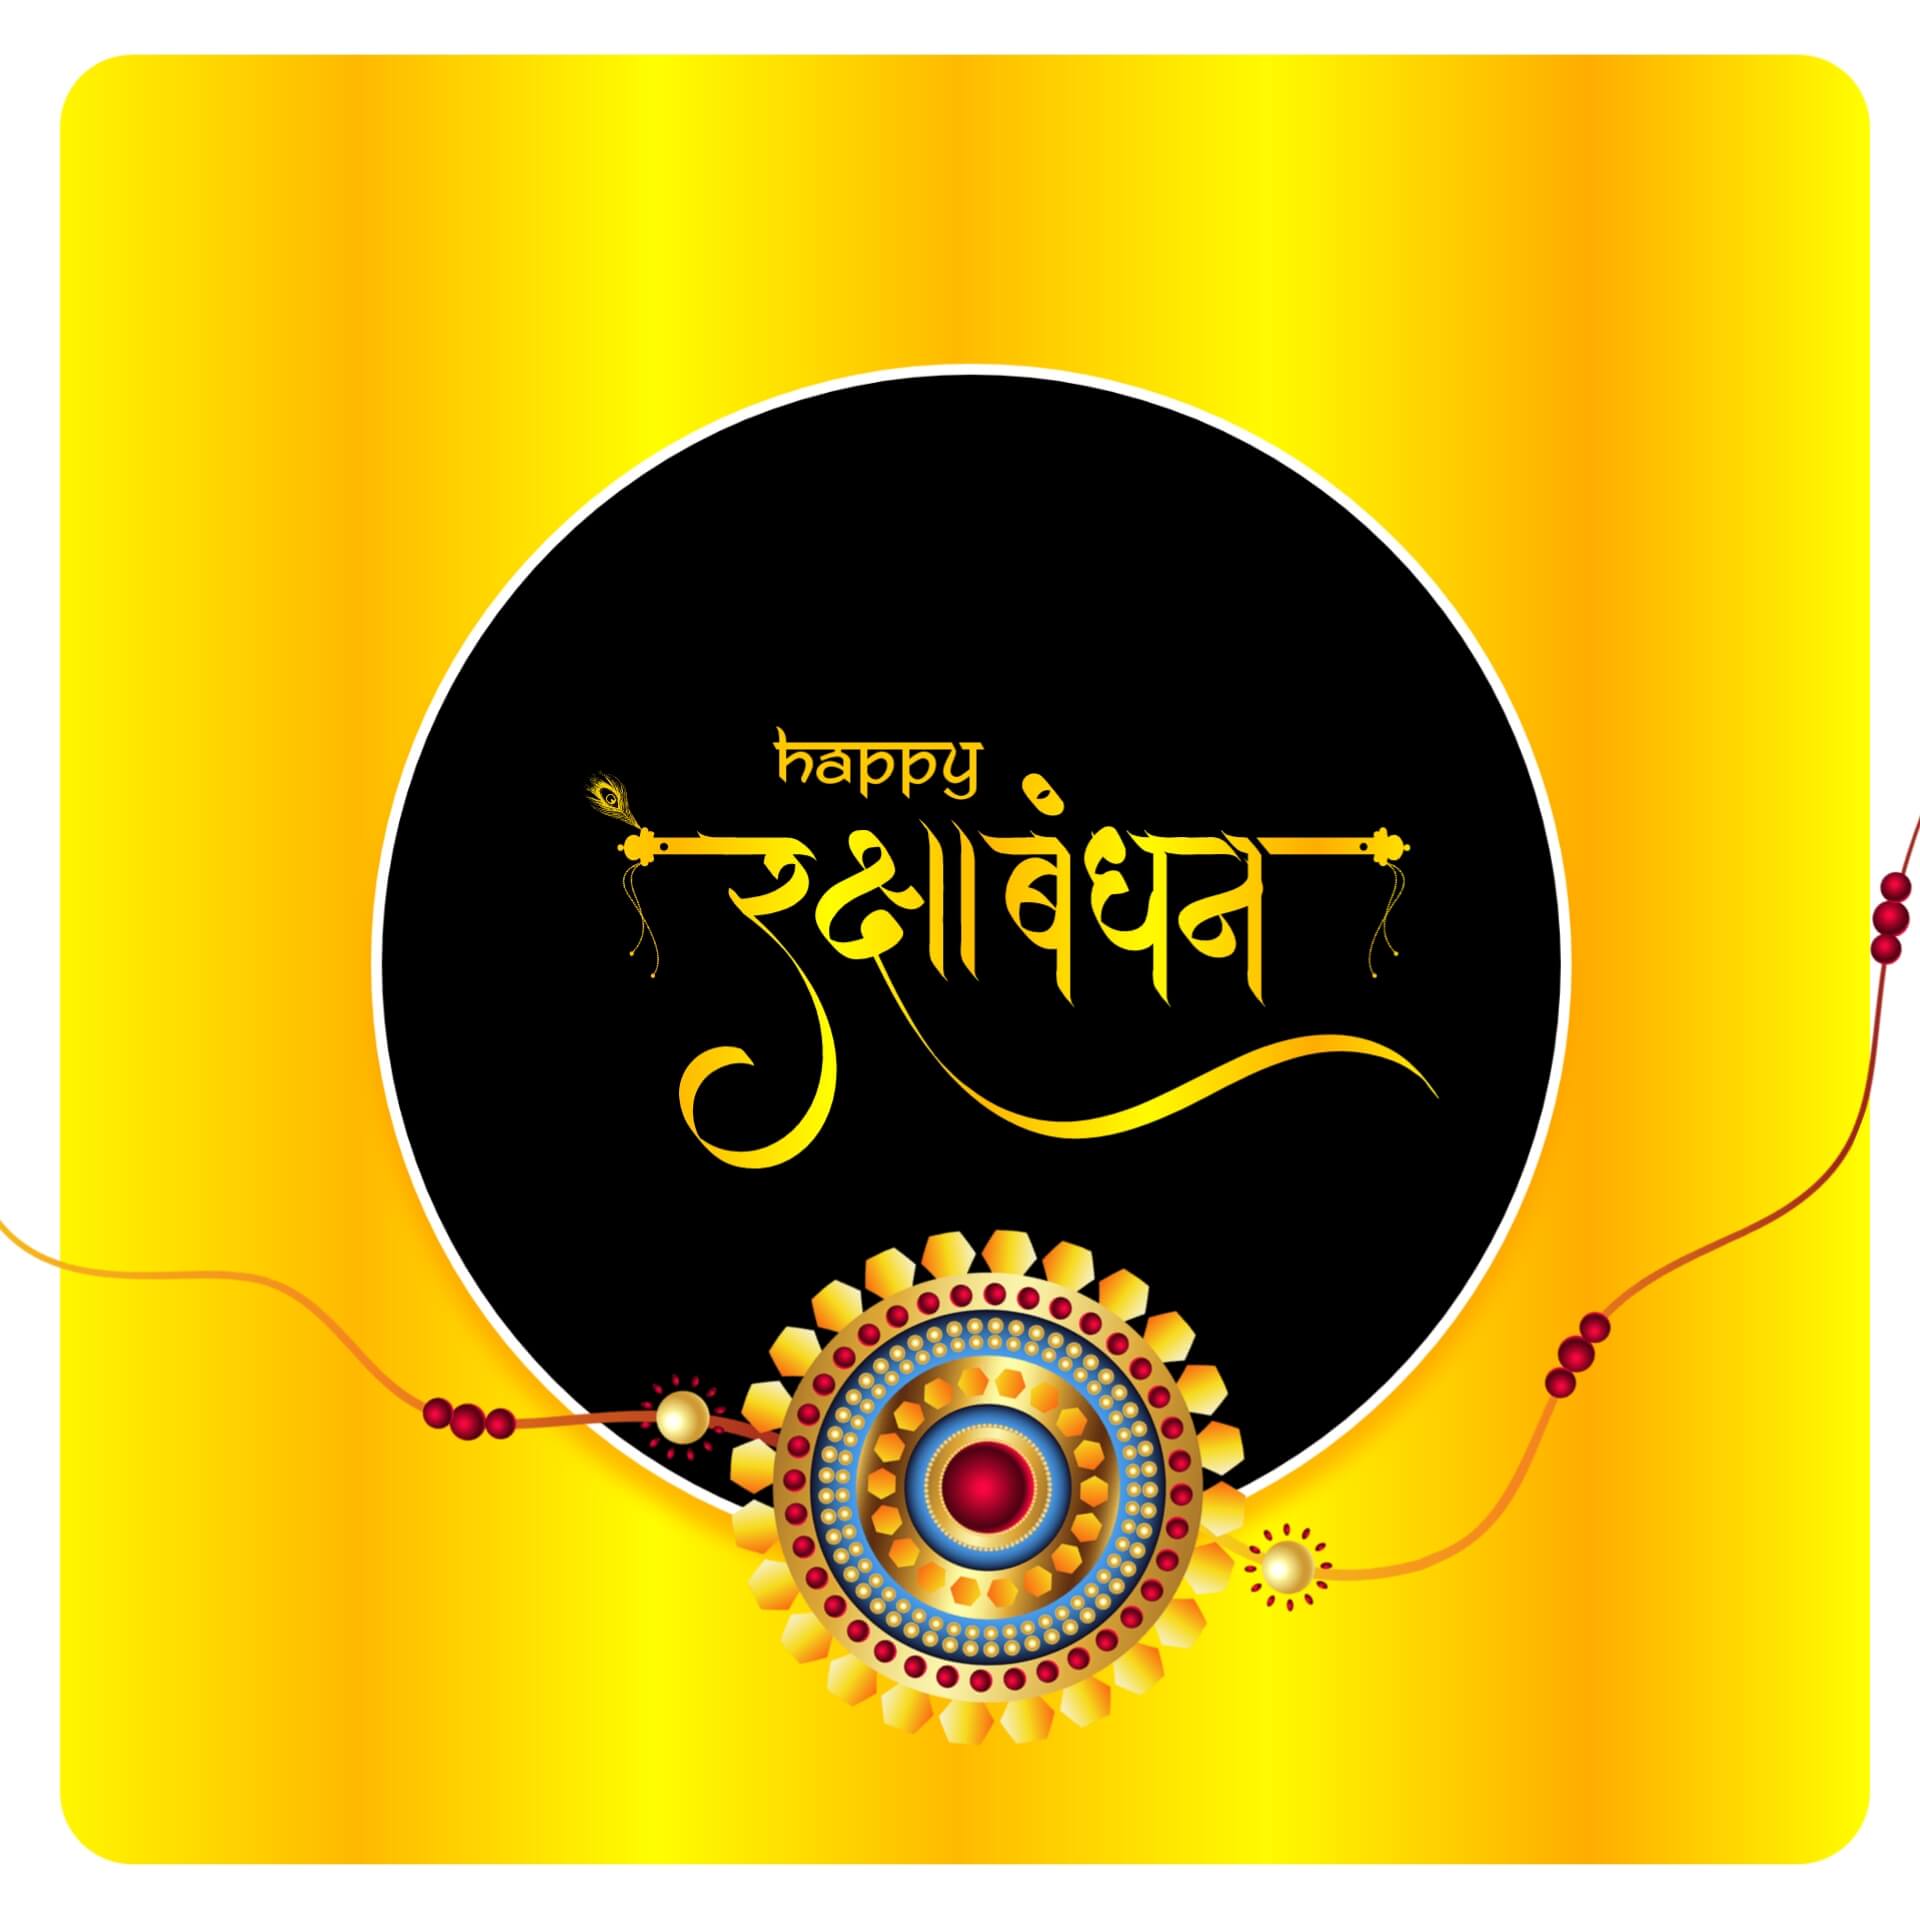 Hindi Raksha Bandhan Image with Golden Gradient Background